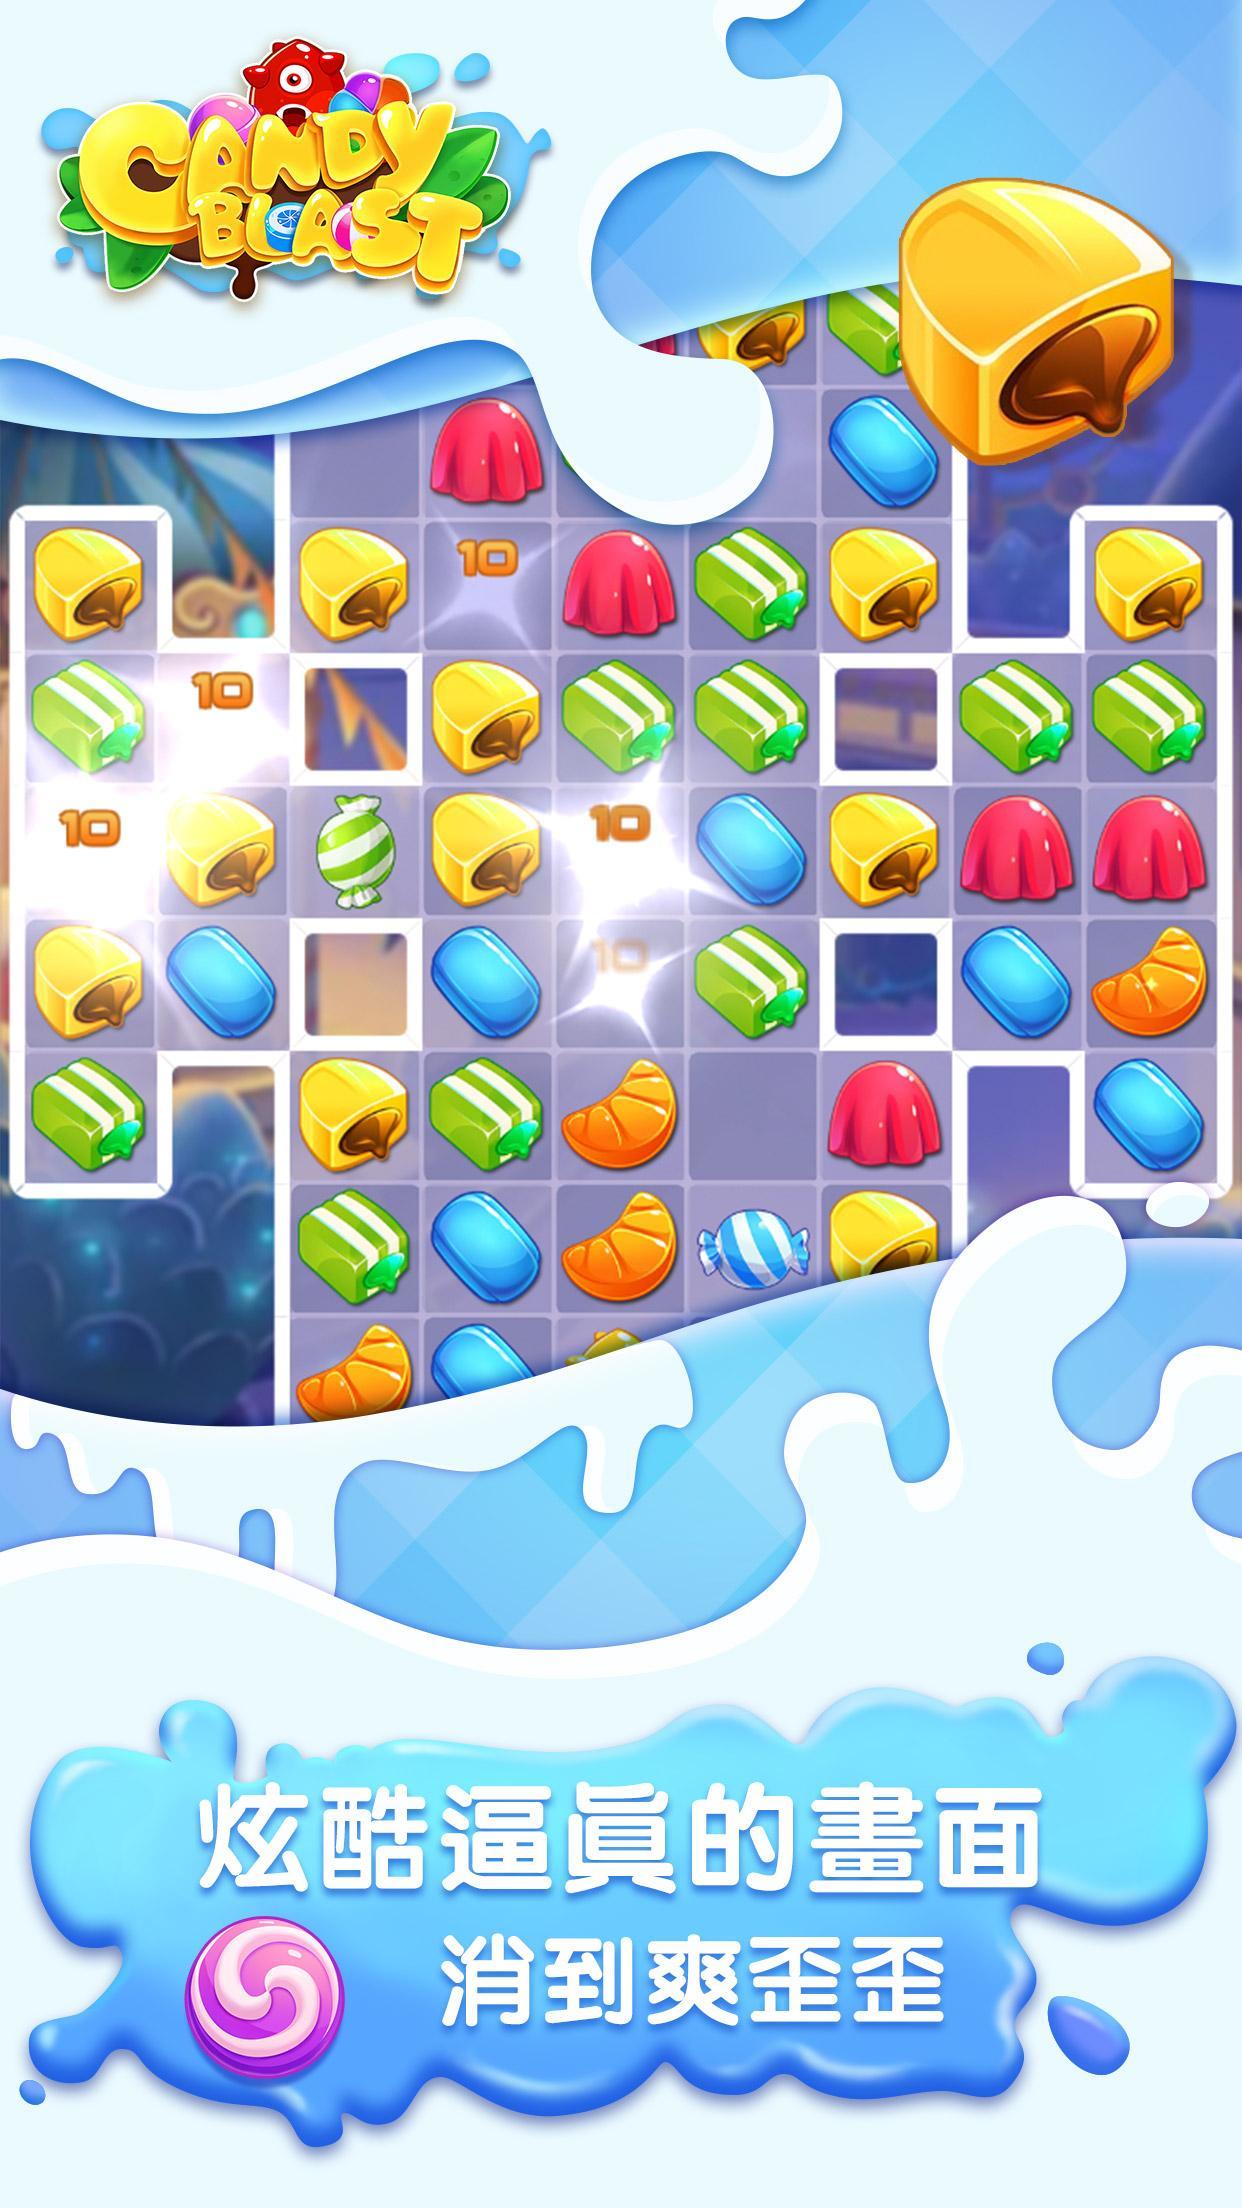 Screenshot 1 of Candy Blast: Trò chơi ghép 3 1.1.2